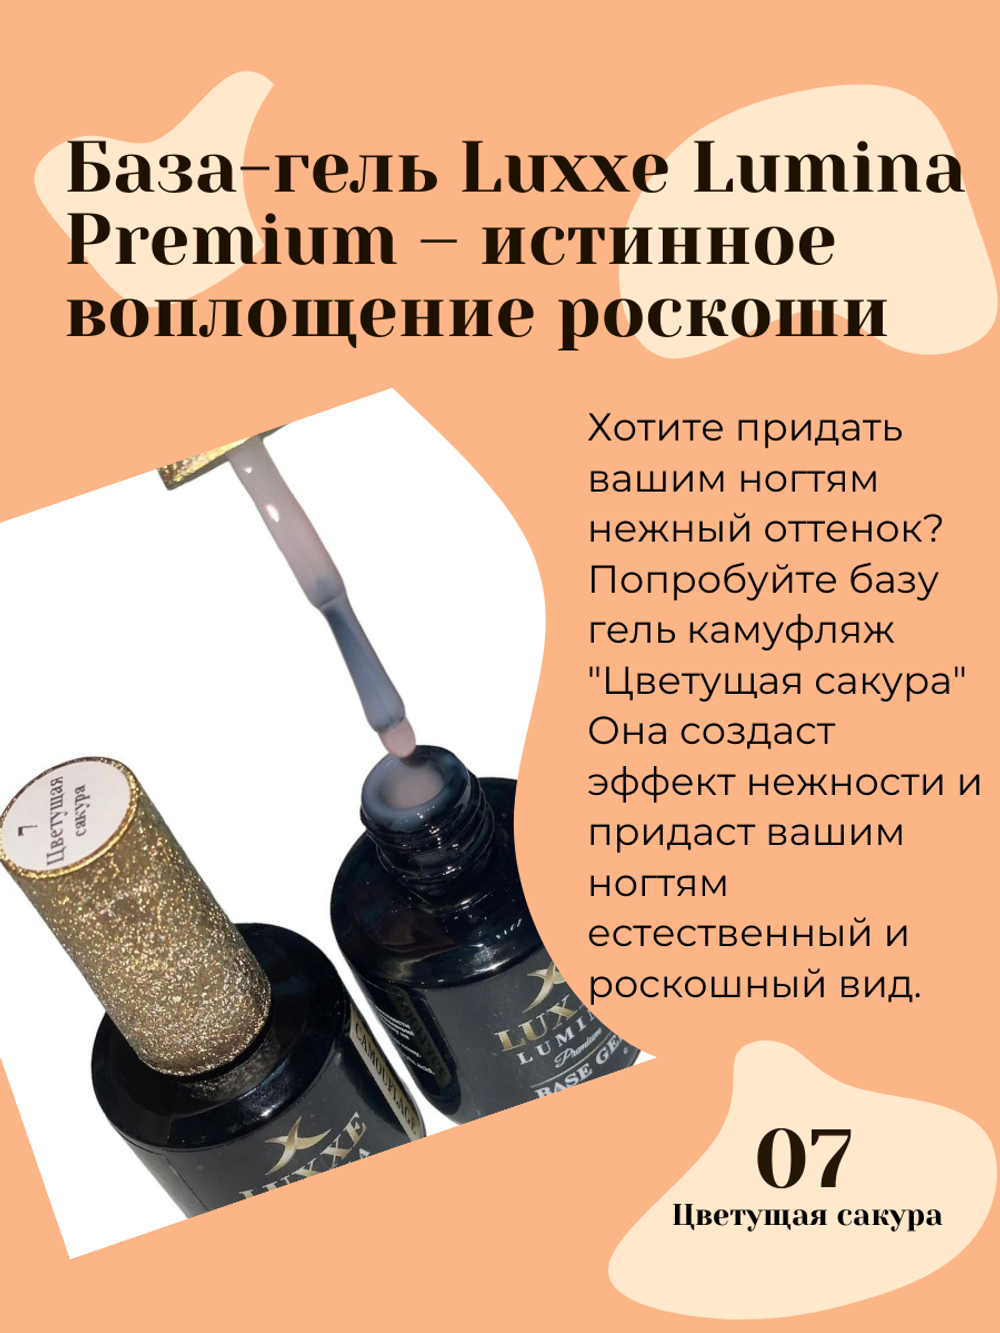 База-гель для ногтей камуфляж Luxxe Lumina Premium, цветущая сакура №7